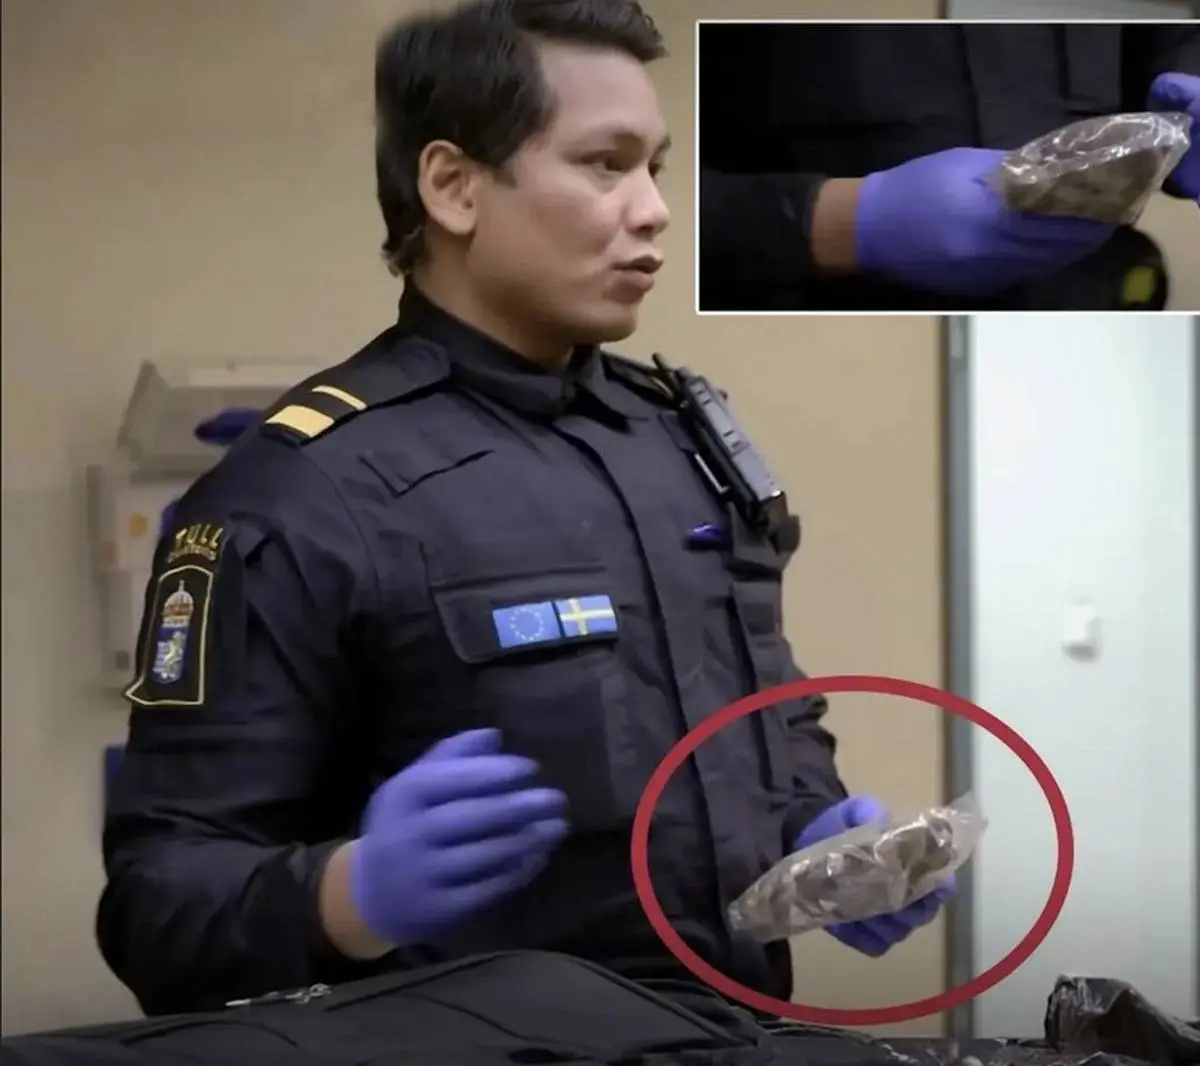 عجیب اما واقعی؛ دستگیری مرد ایرانی در فرودگاه سوئد به خاطر حمل مدفوع الاغ!